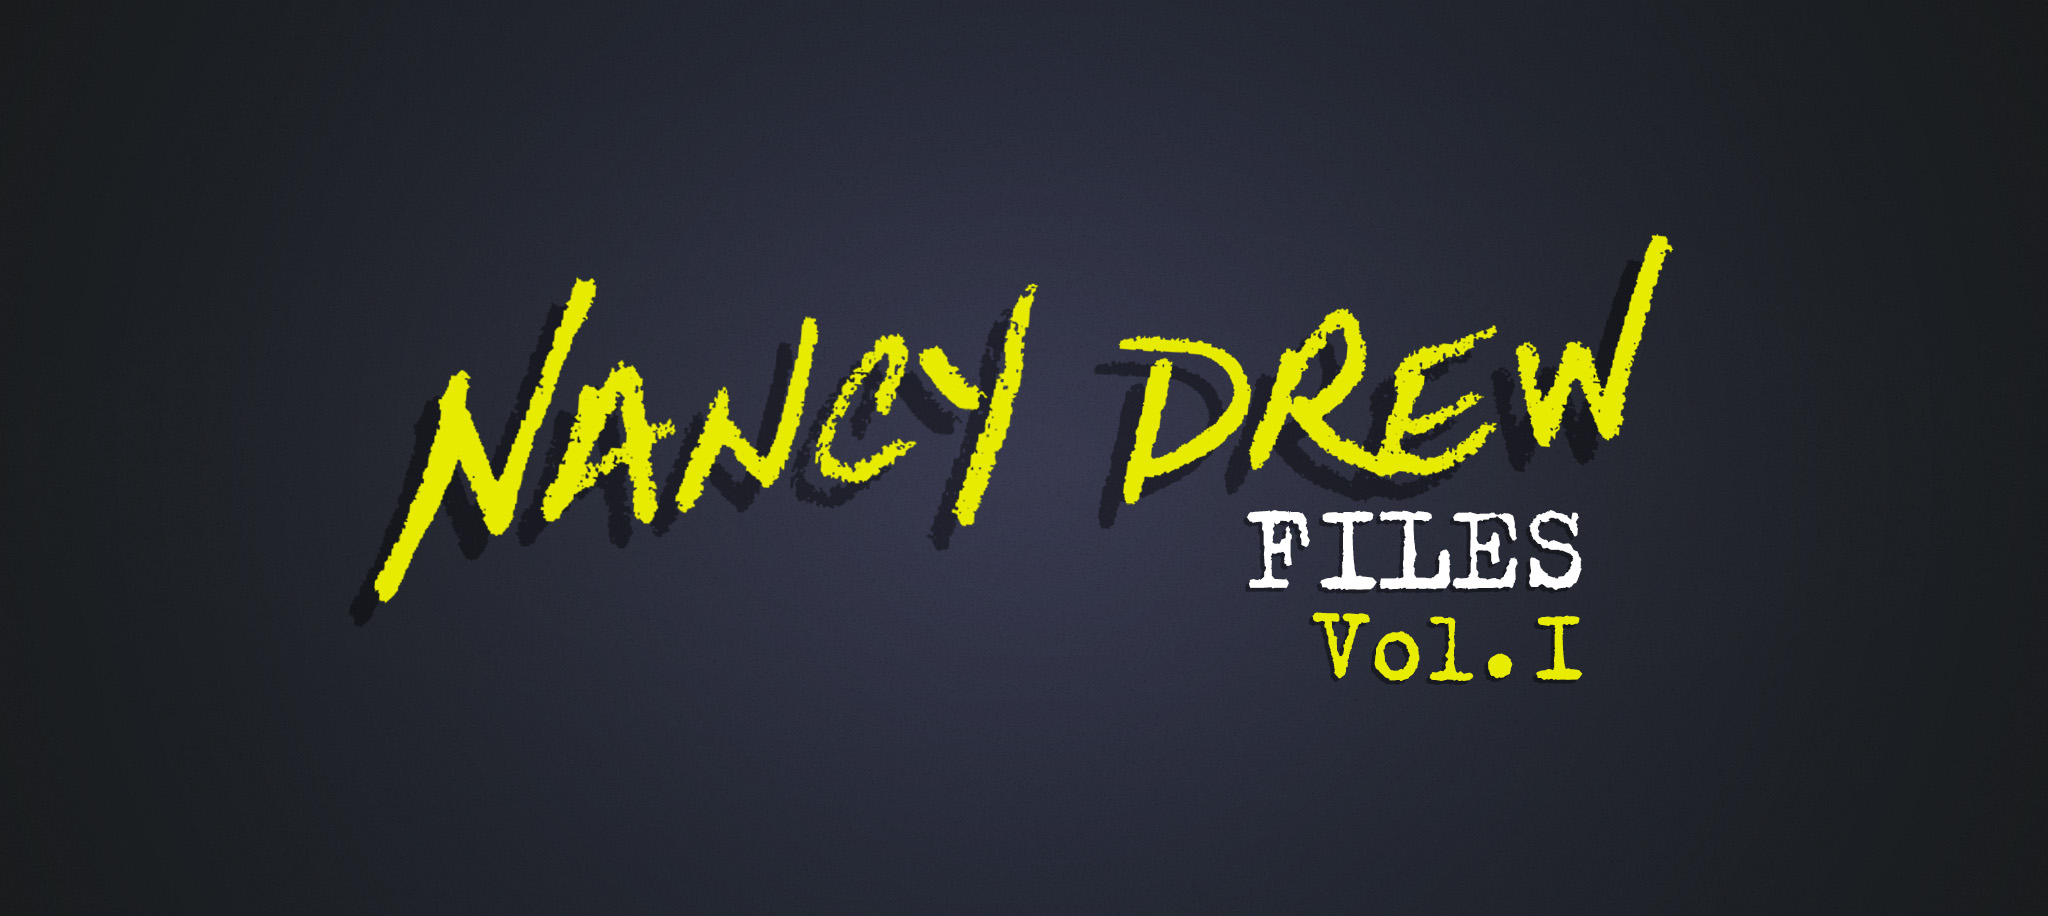 Nancy Drew Files, Vol. Ⅰ